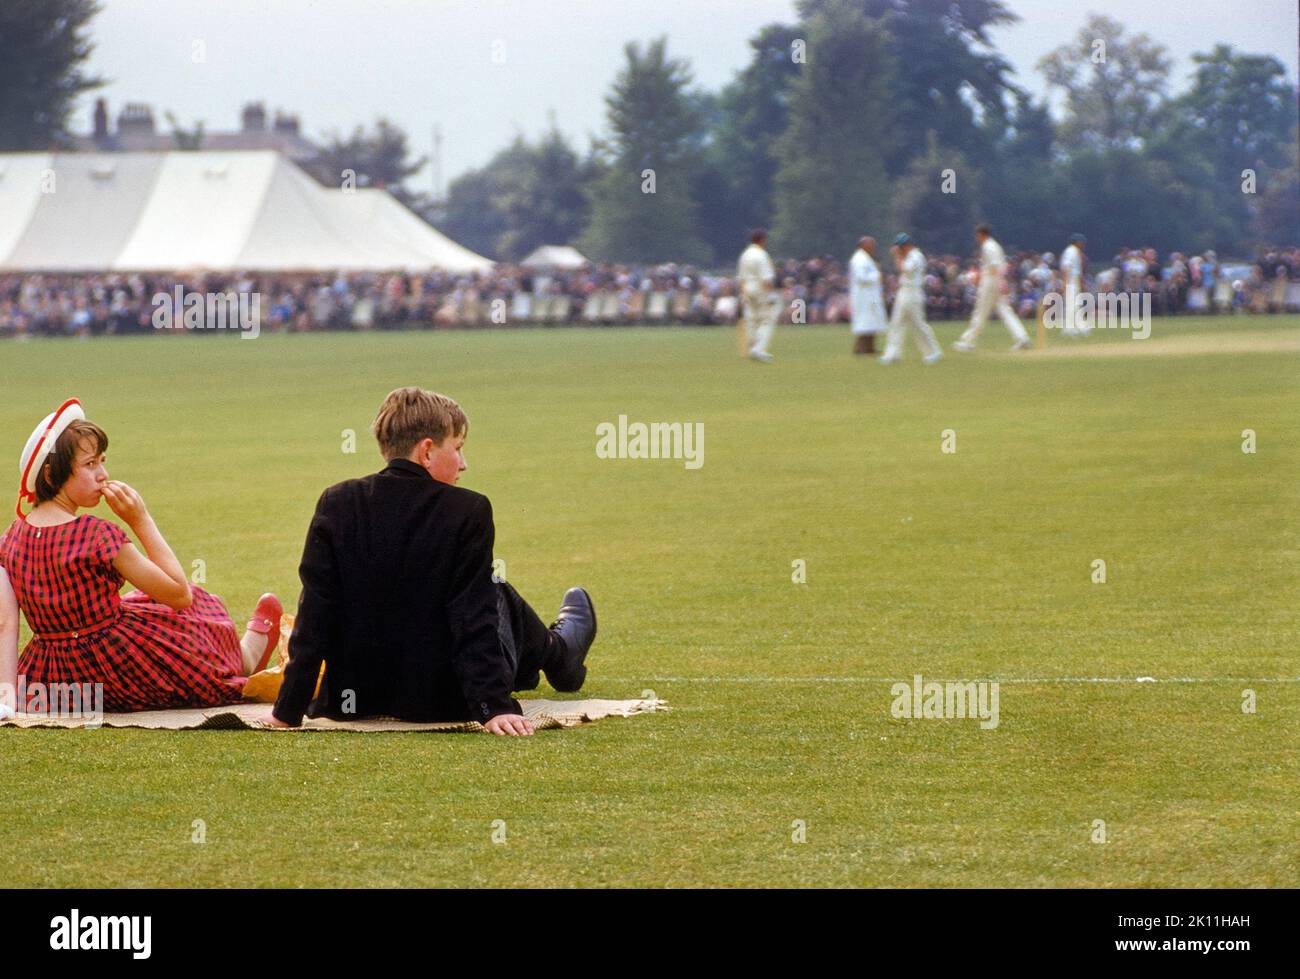 Teen Boy und Girl beim Cricket-Match auf der Veranstaltung „Fourth of June“, Eton College, Eton, Bekshire, England, Großbritannien, Toni Frisell Collection, 4. Juni 1959 Stockfoto